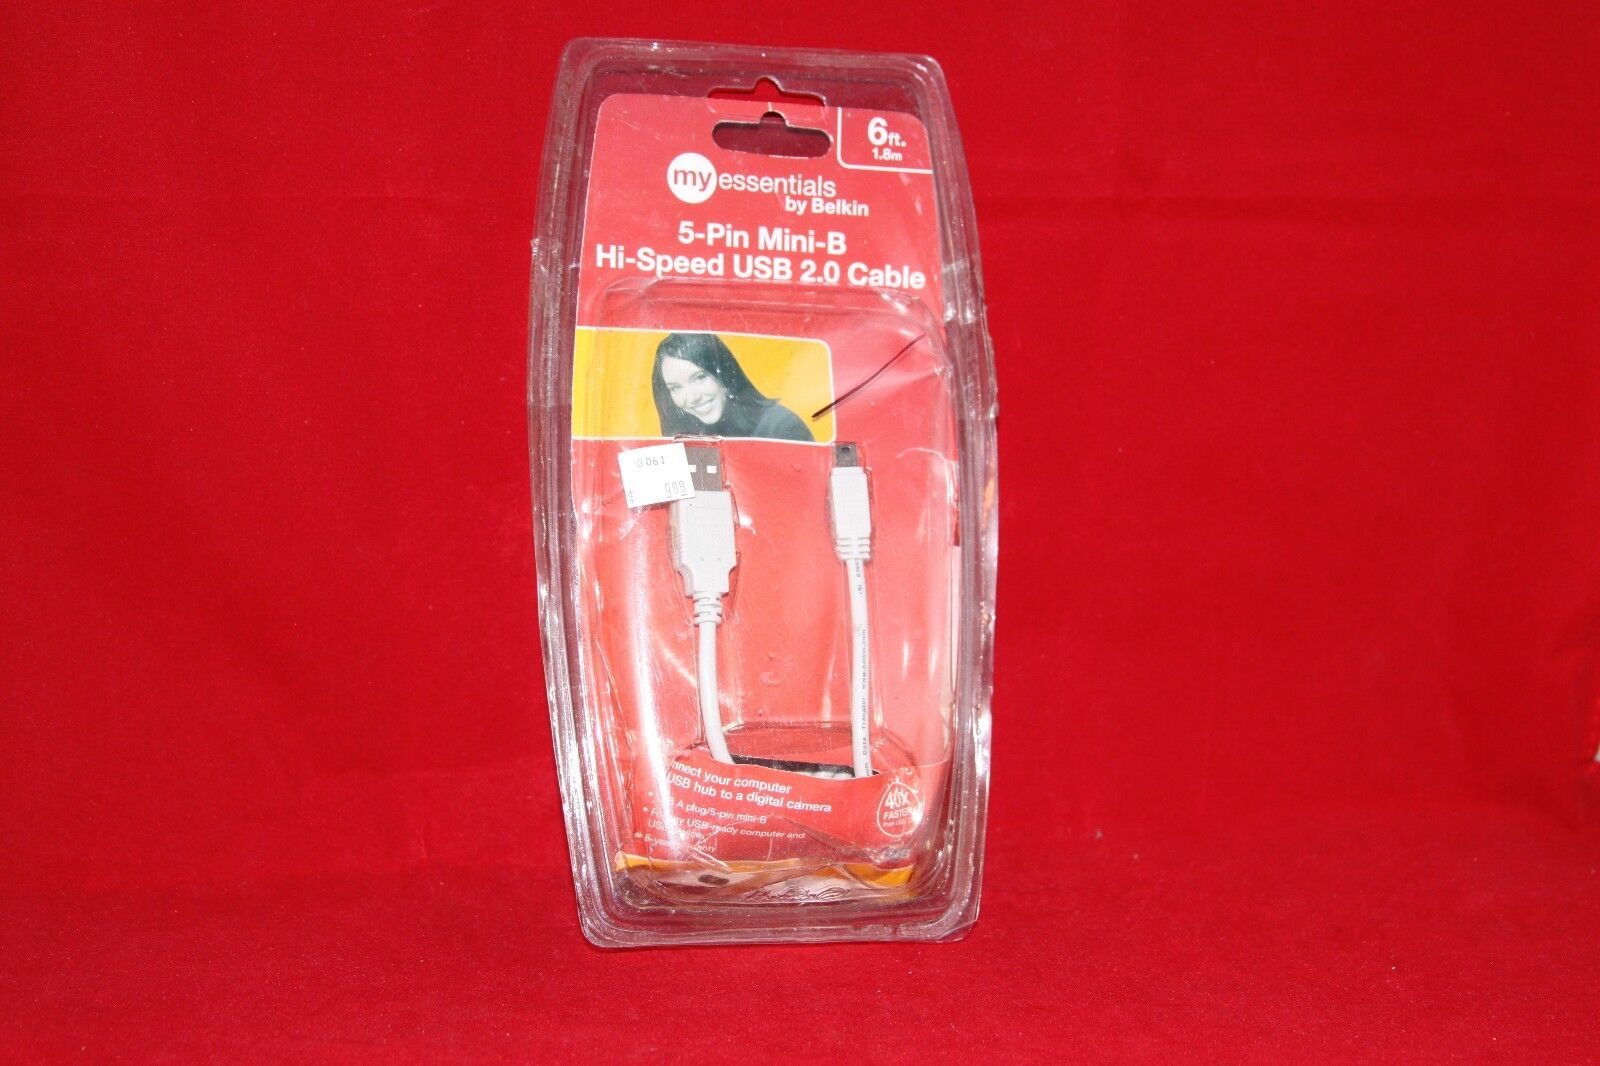 Belkin My essentials 5-Pin Mini-B Hi-Speed USB 2.0 Cable, 6 ft. (1.8 m)